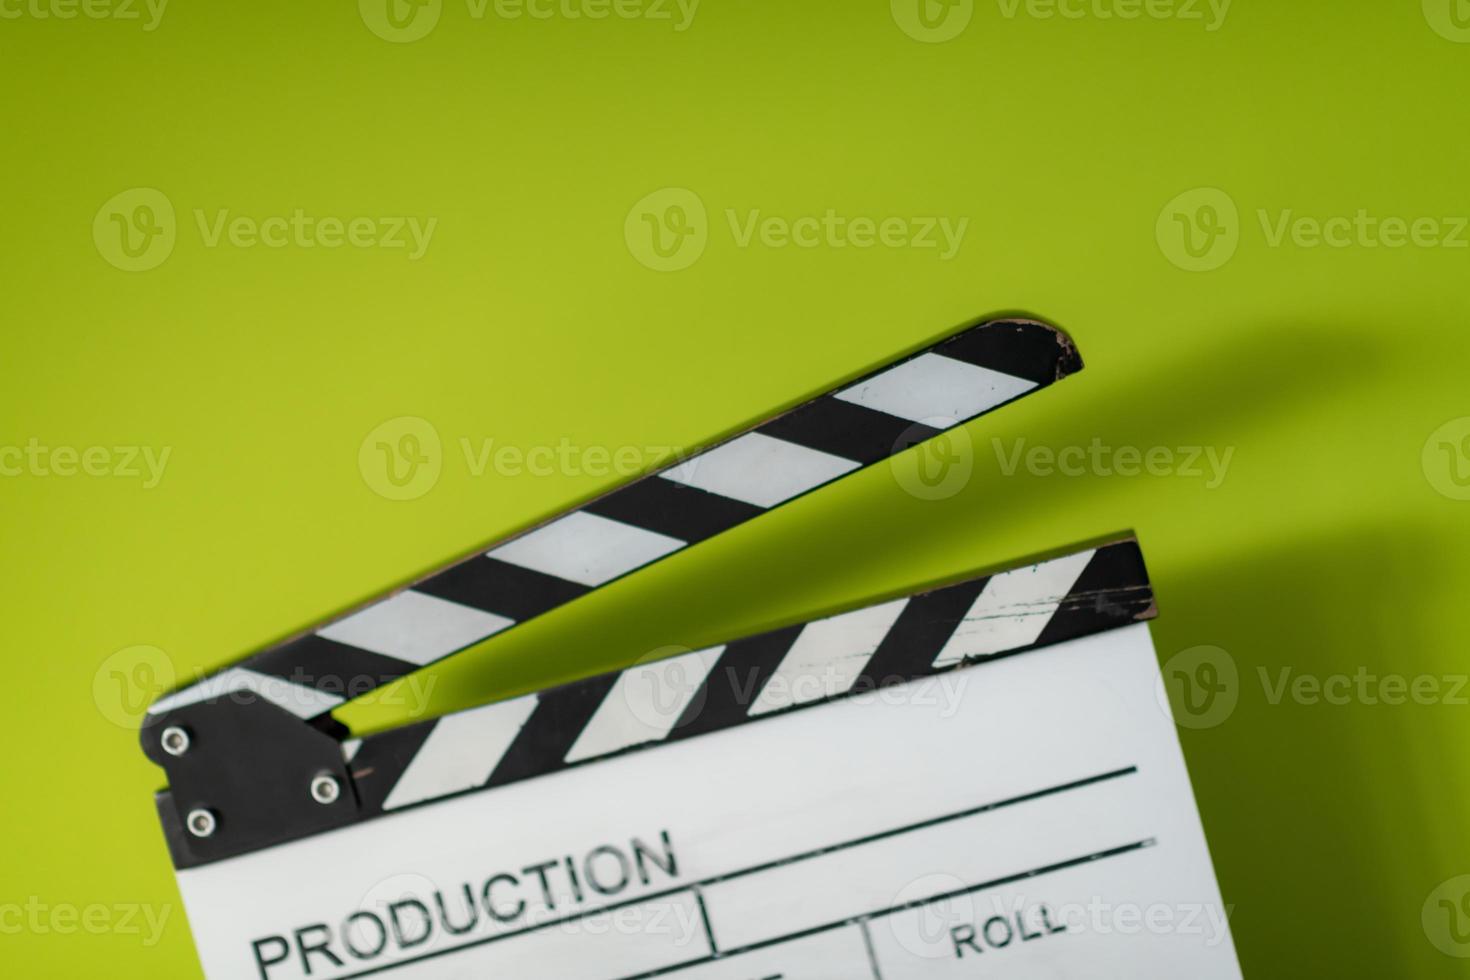 Filmklöppel auf grünem Hintergrund foto